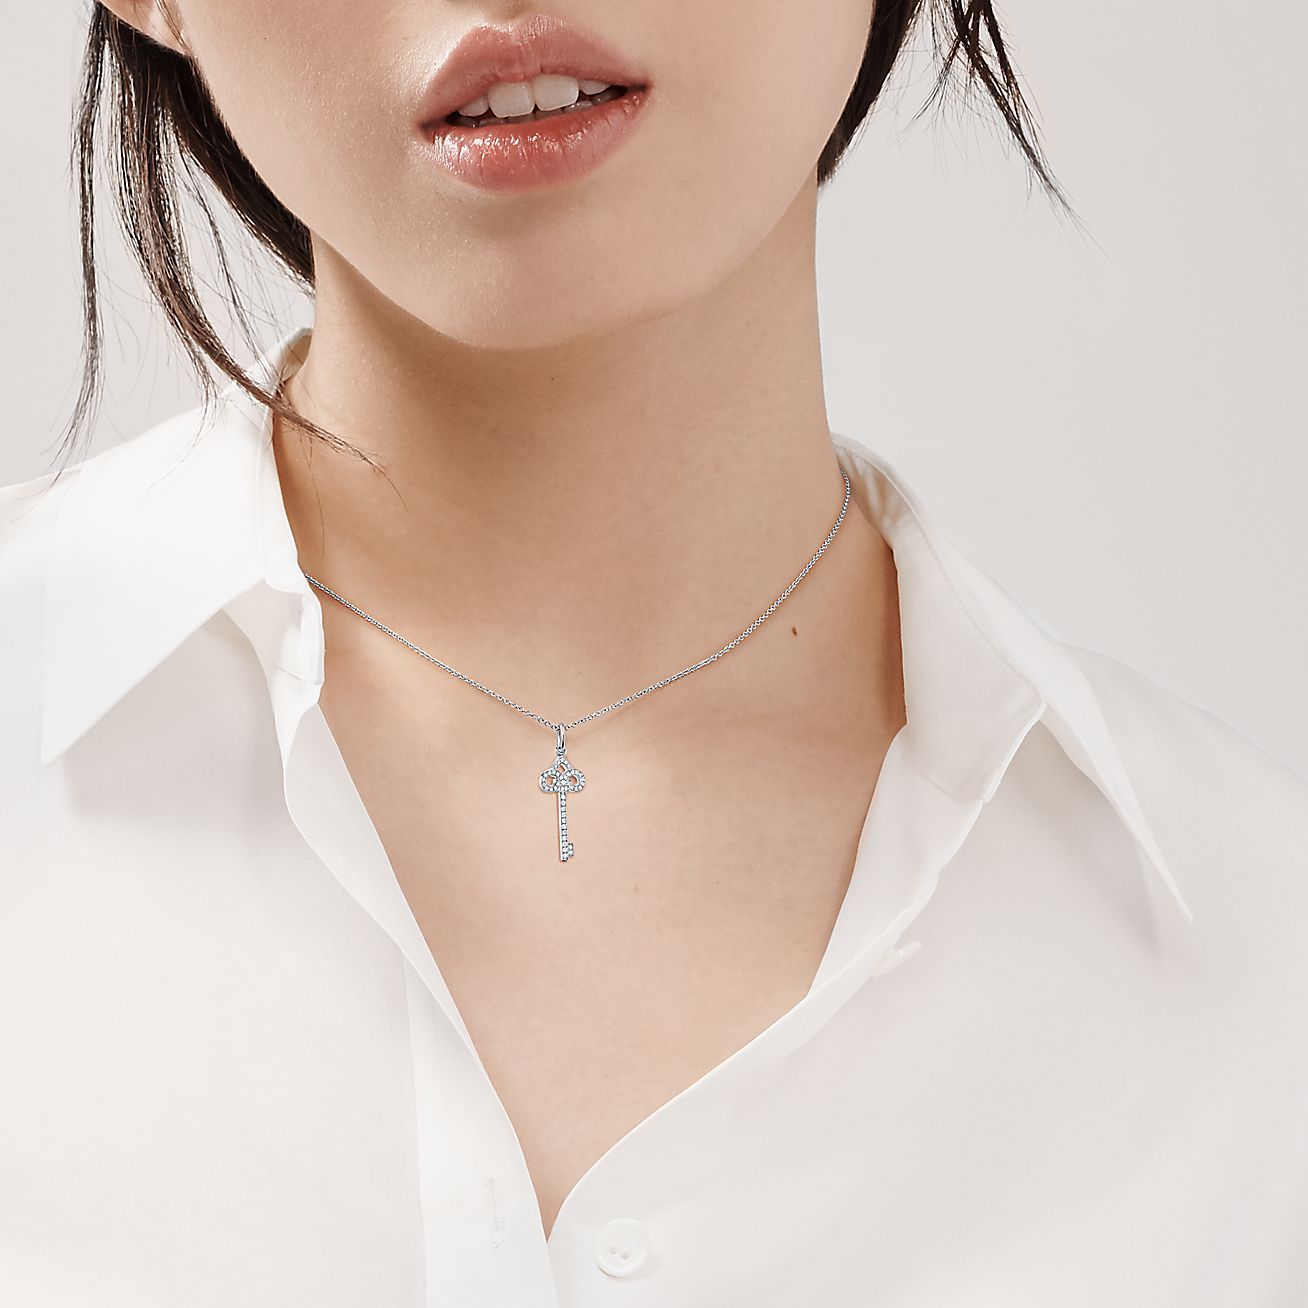 Tiffany & Co. Diamond Platinum Fleur De Lis Key Pendant Necklace